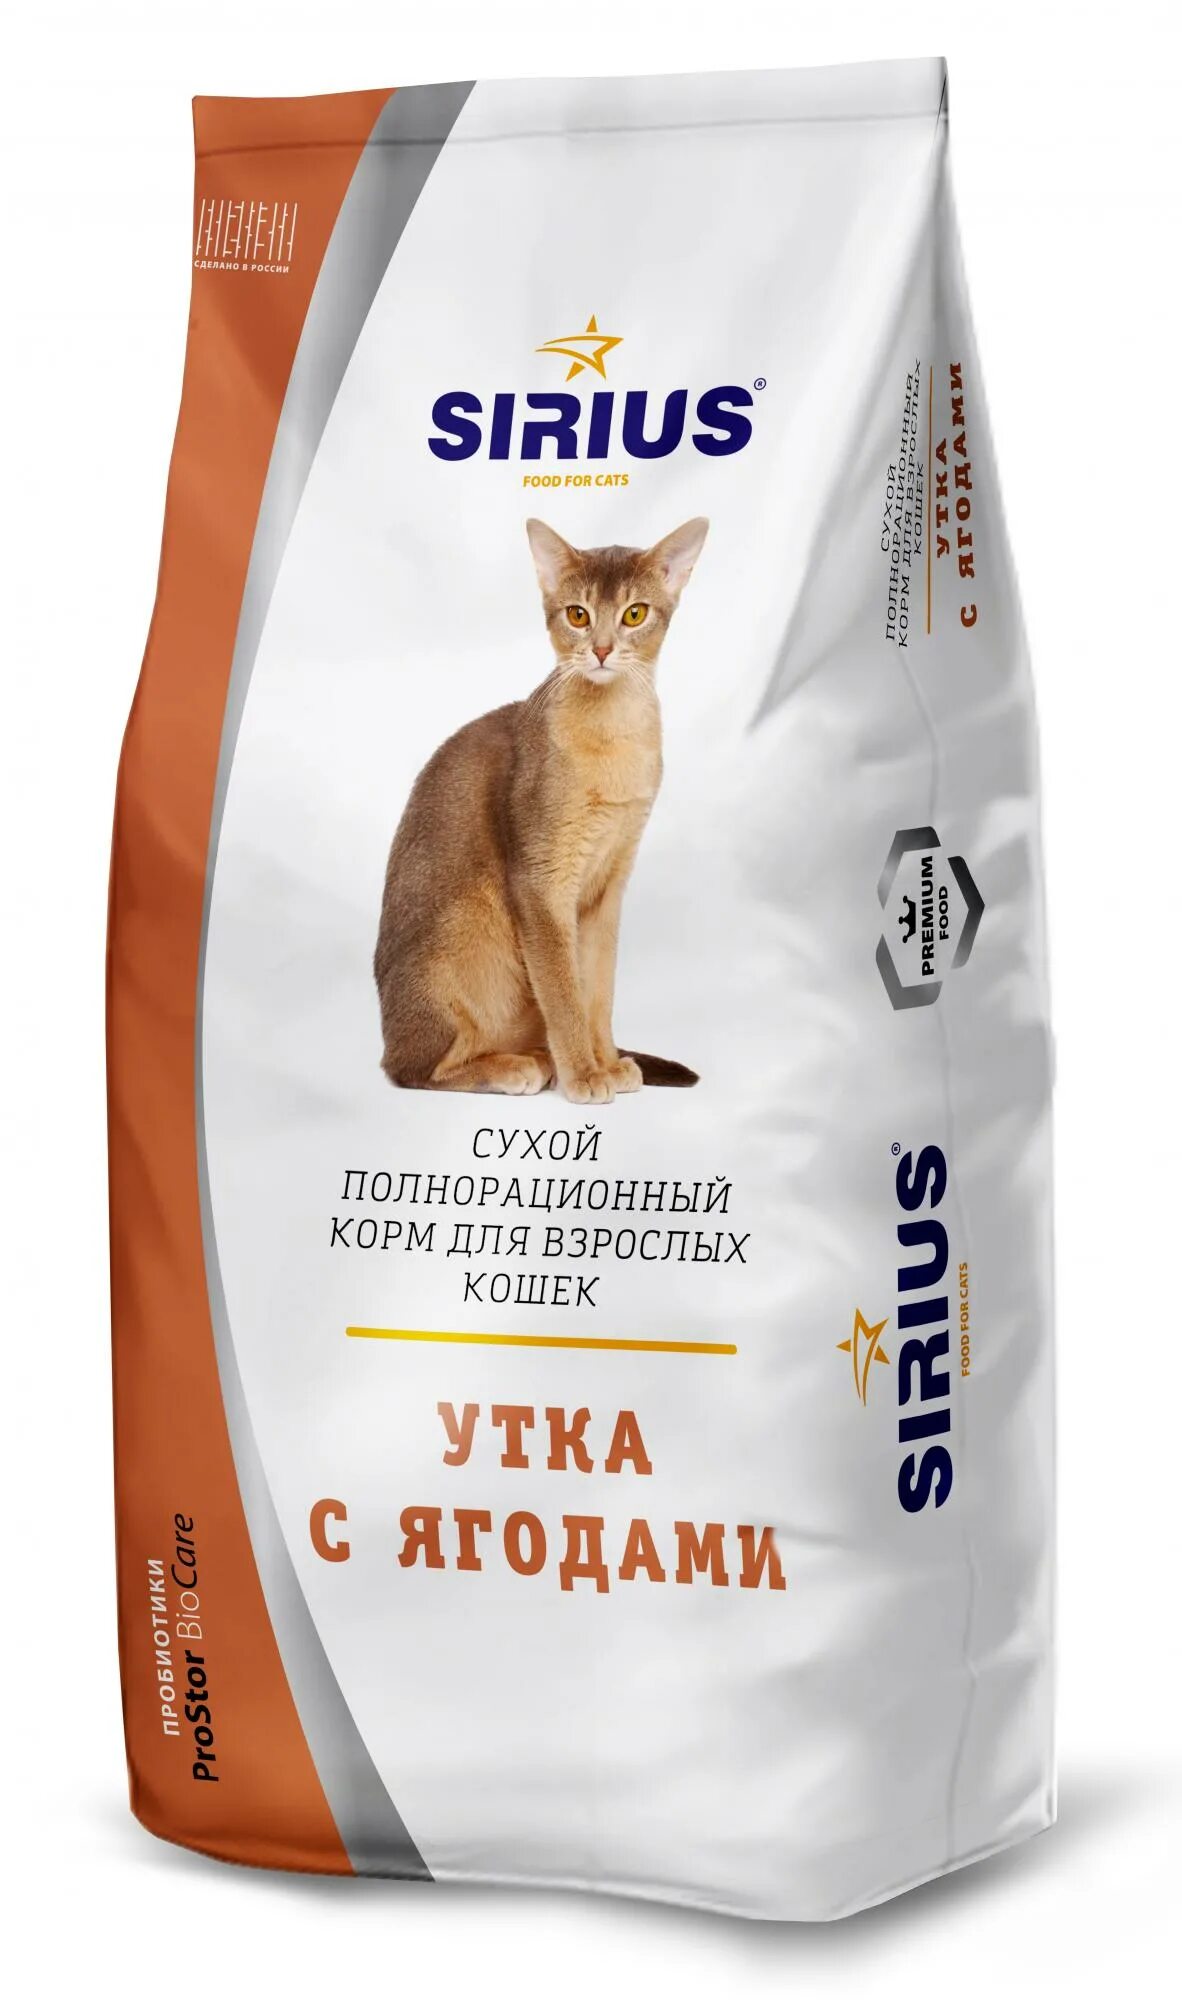 Корм Сириус для кошек лосось и рис. Сириус корм для кошек 10 кг. Sirius Platinum корм. Корм Сириус премиум для кошек. Сириус для кошек 10 кг купить